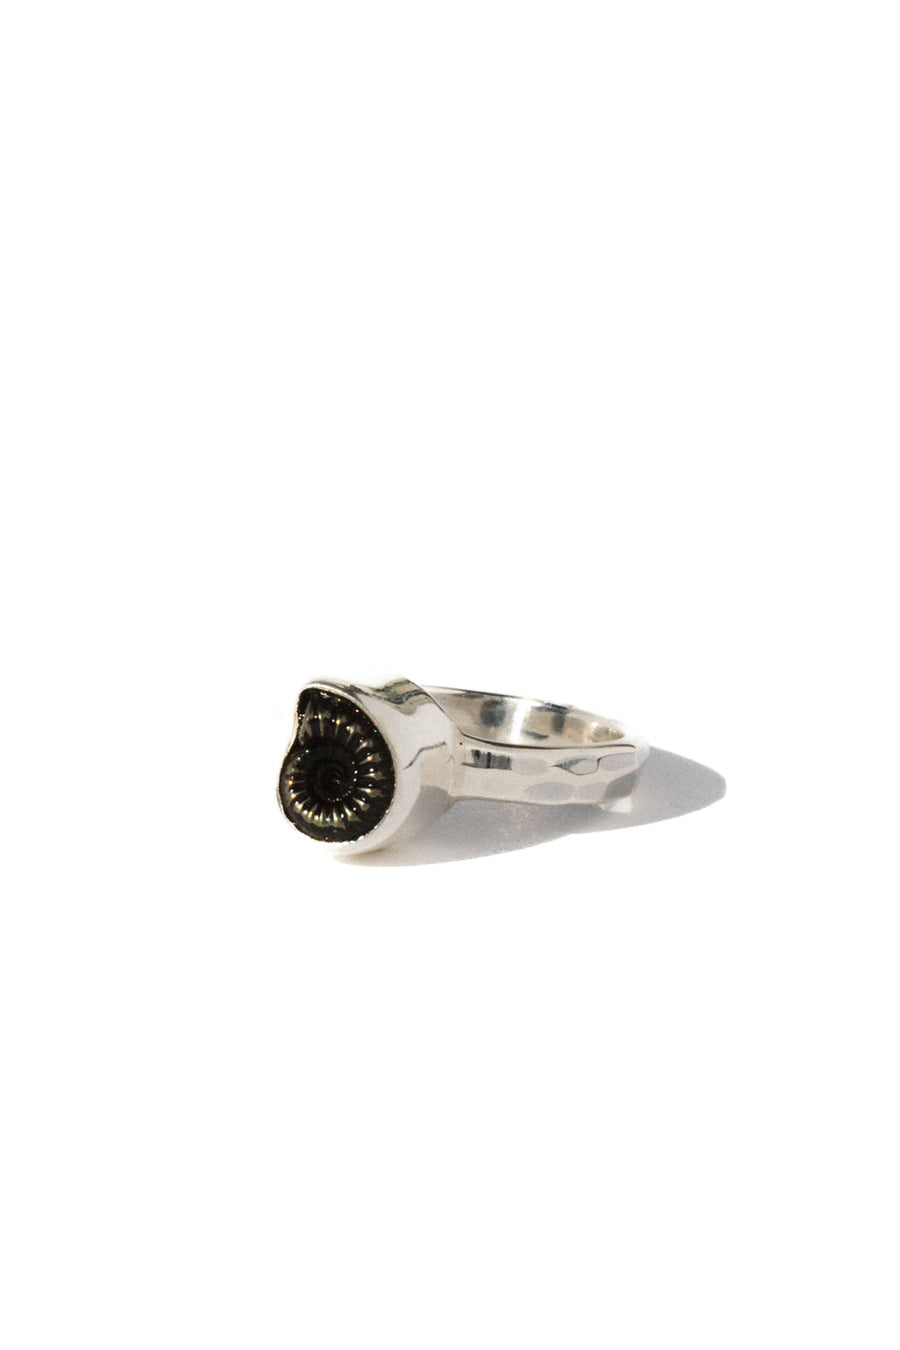 Starborn Creations Jewelry Silver / US 7 Avisa Hematite Ammonite Ring